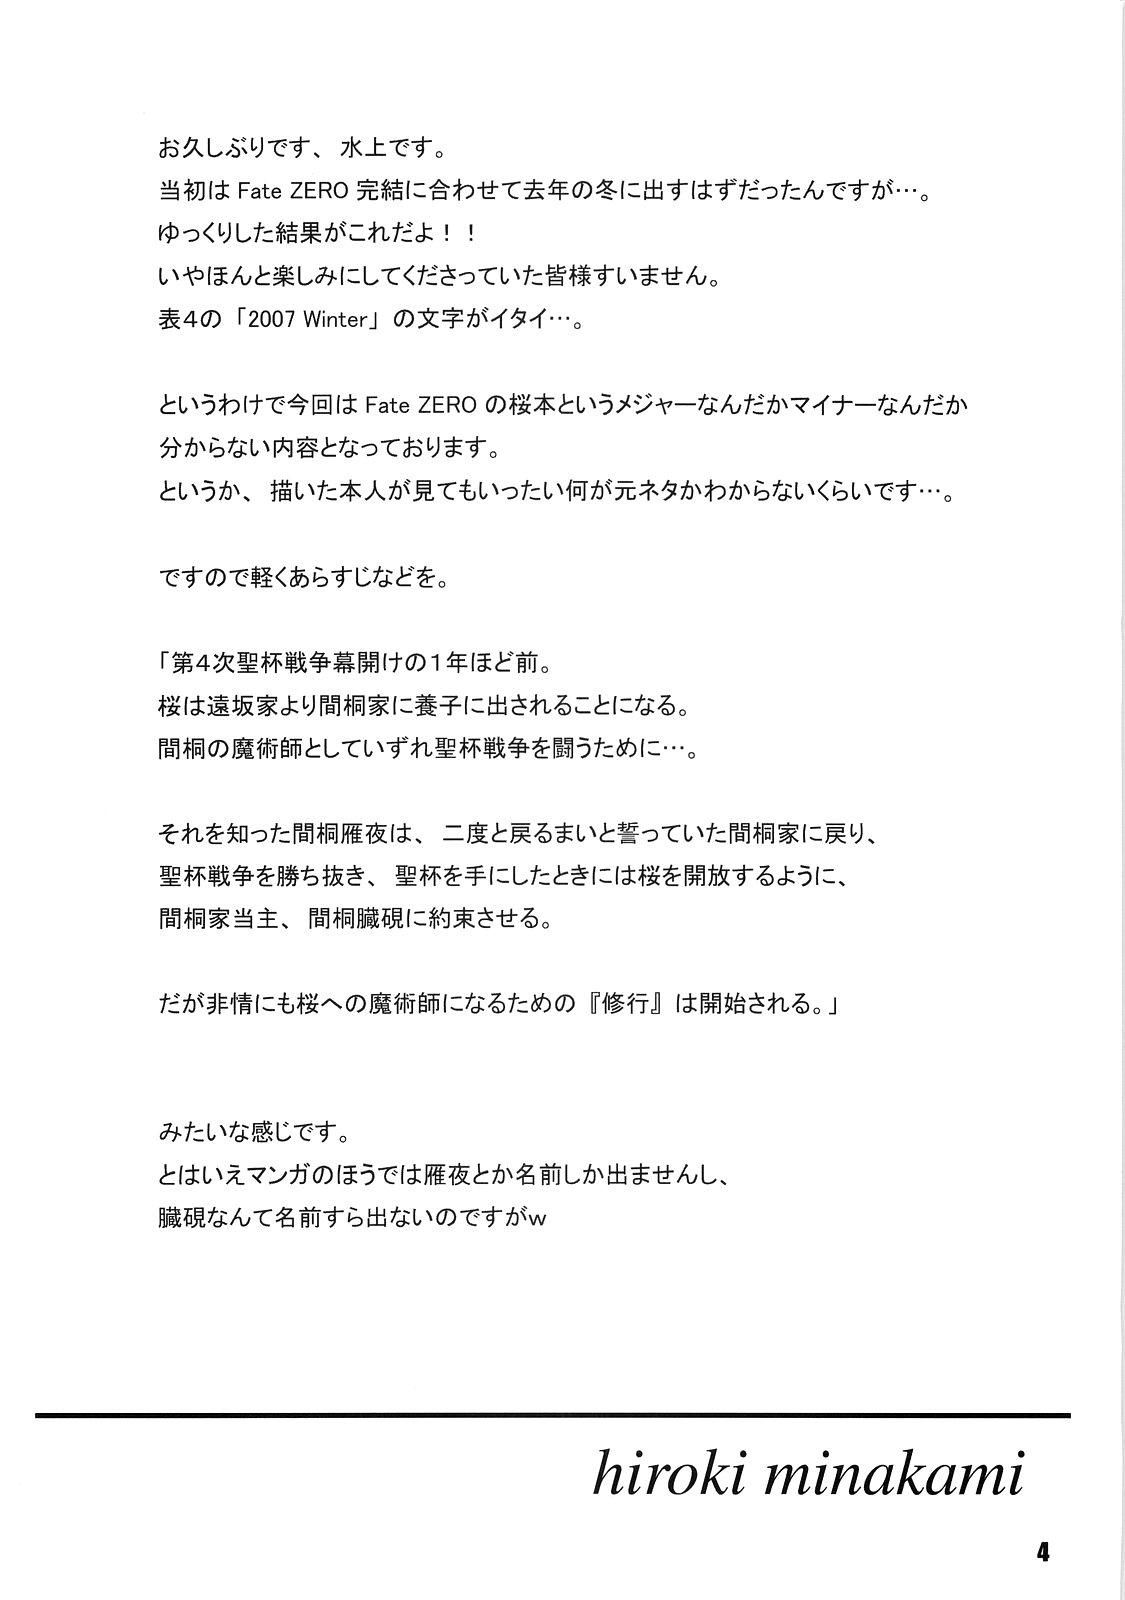 Culazo SAKURA Z-ERO EXtra stage vol. 22 - Fate stay night Fate zero Pica - Page 3